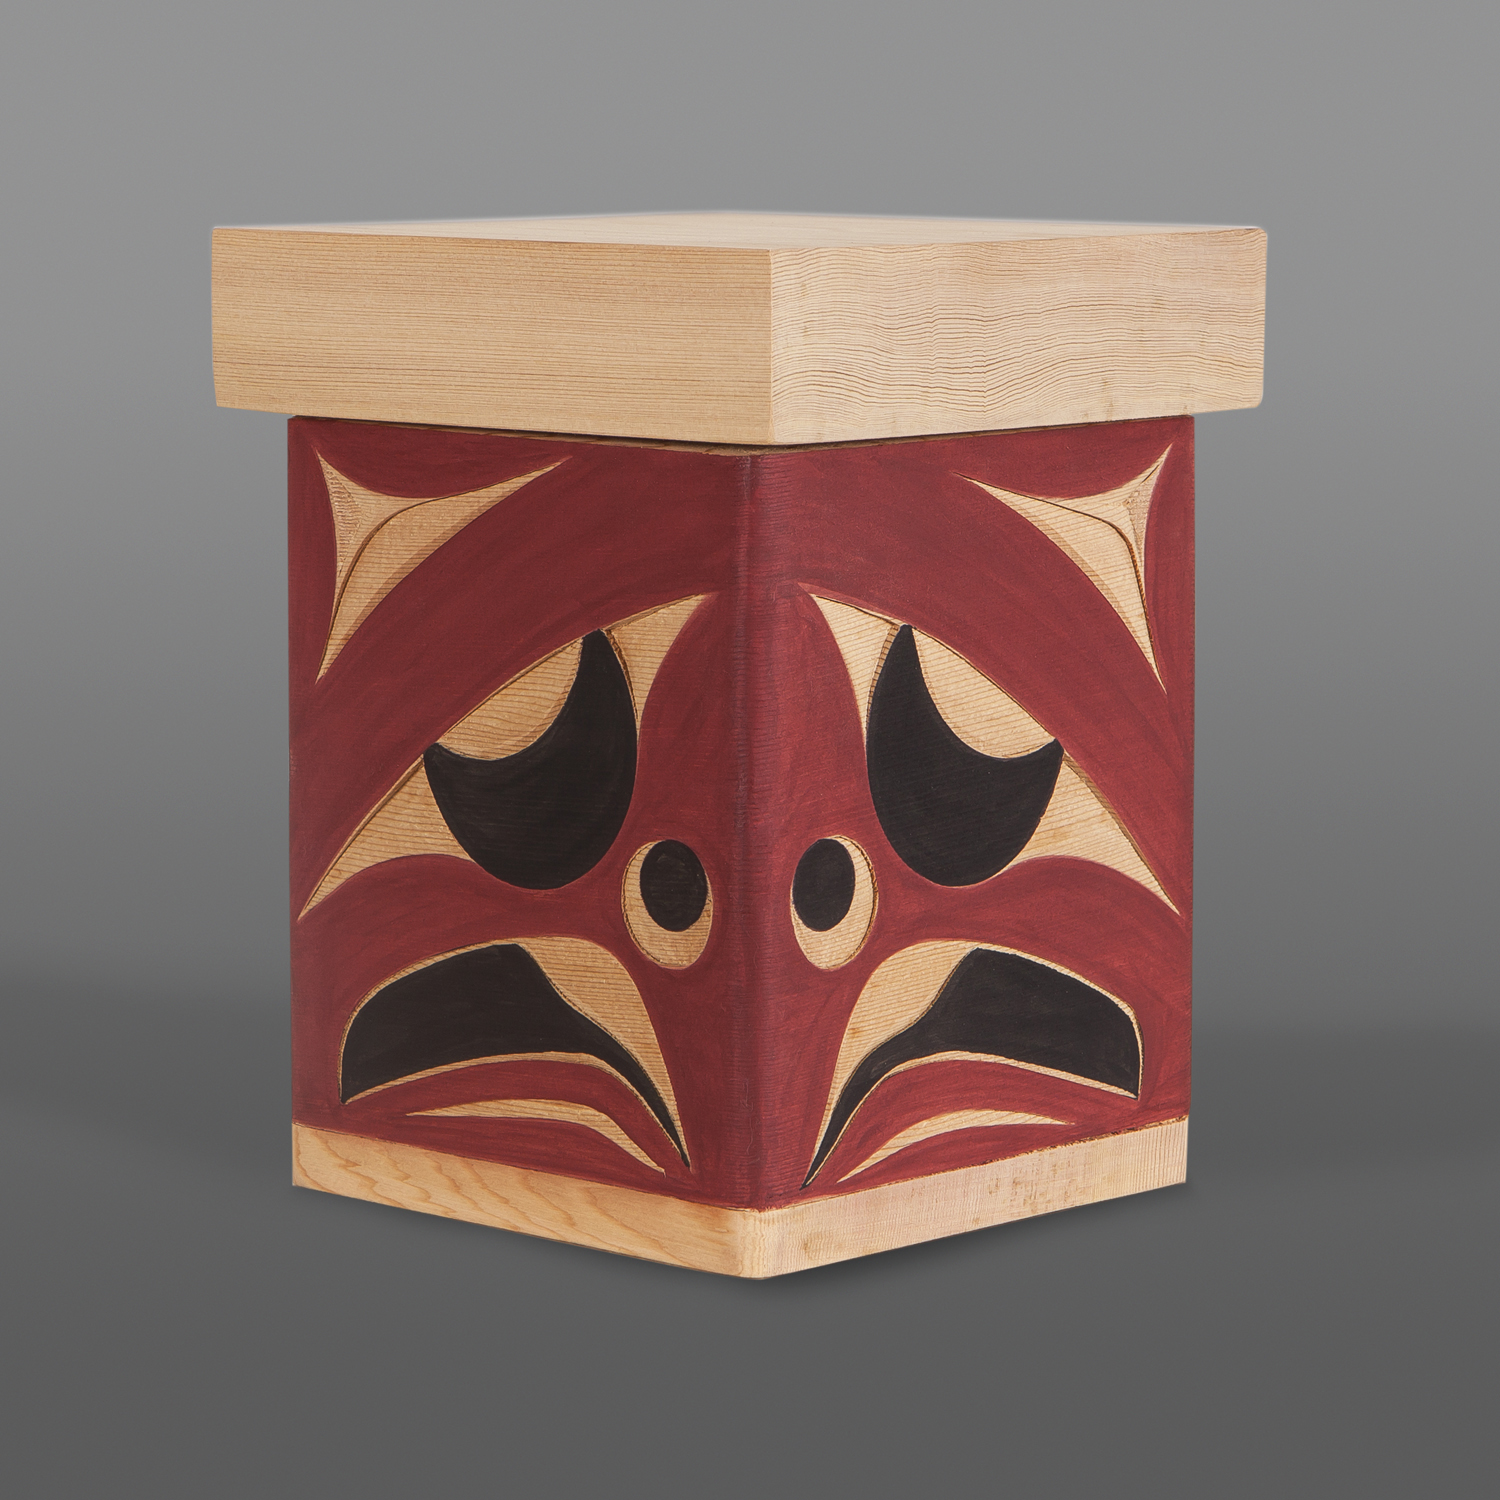 Woodpecker Box
Andy Peterson
Coast Salish
Red cedar, paint
7½” x 6" x 6"
$450